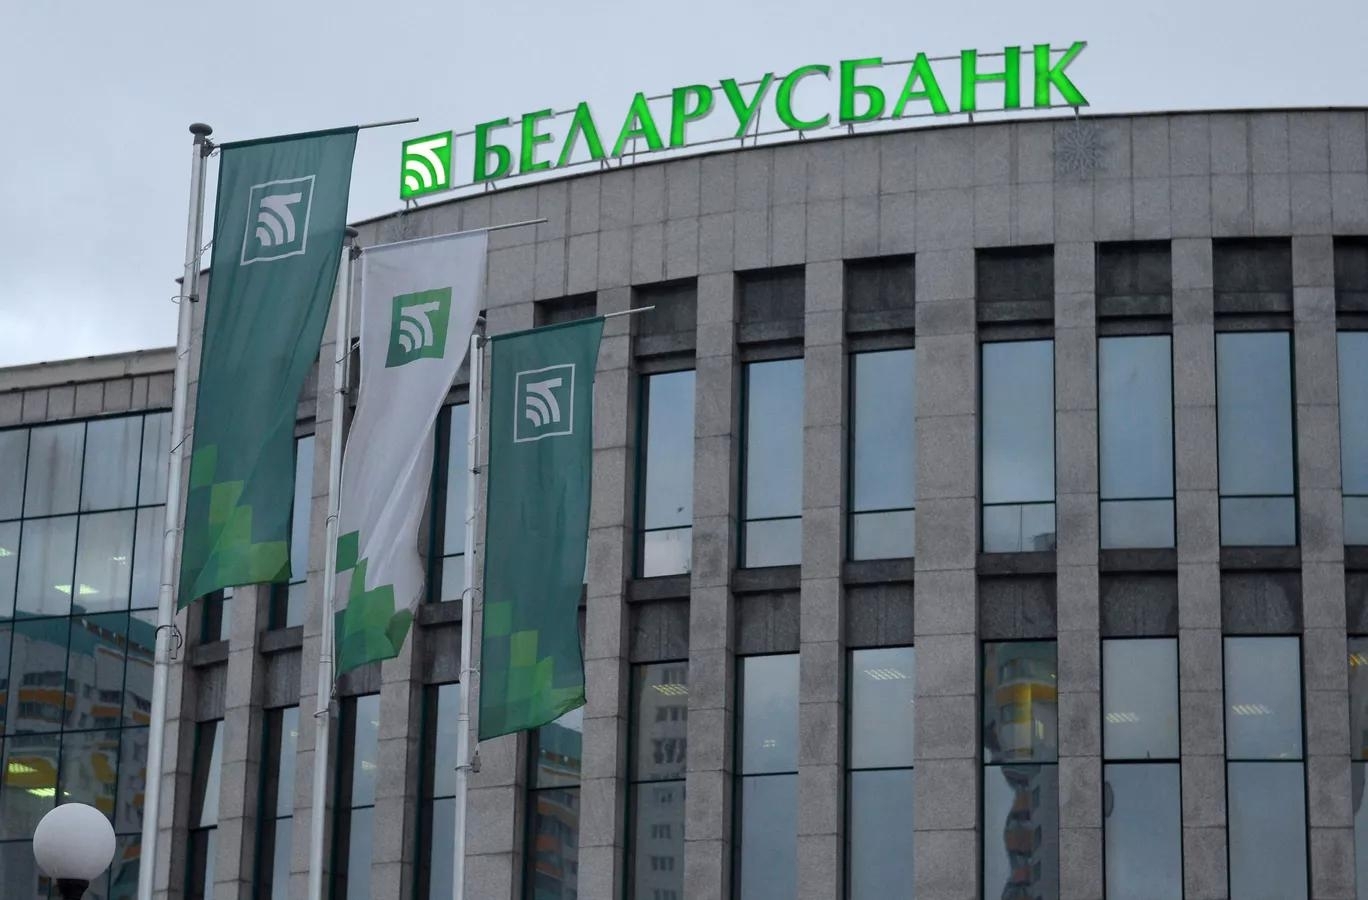 Белорусские банки получили доступ к системе госзакупок РФ на постоянной основе - Минфин России